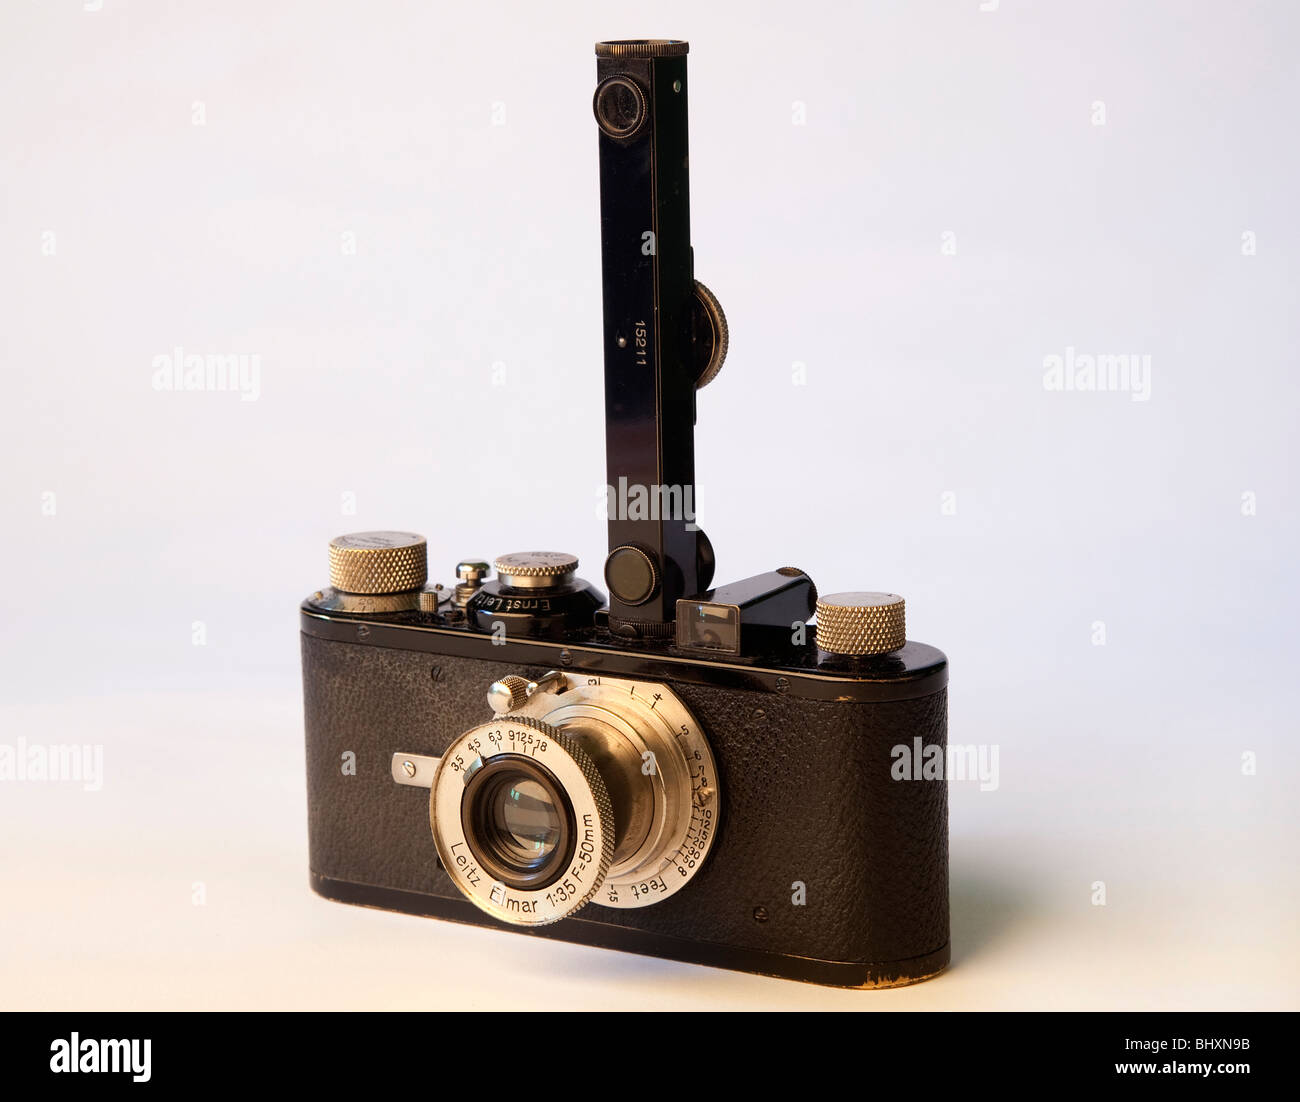 2.Leica 1a (1930) Foto de stock